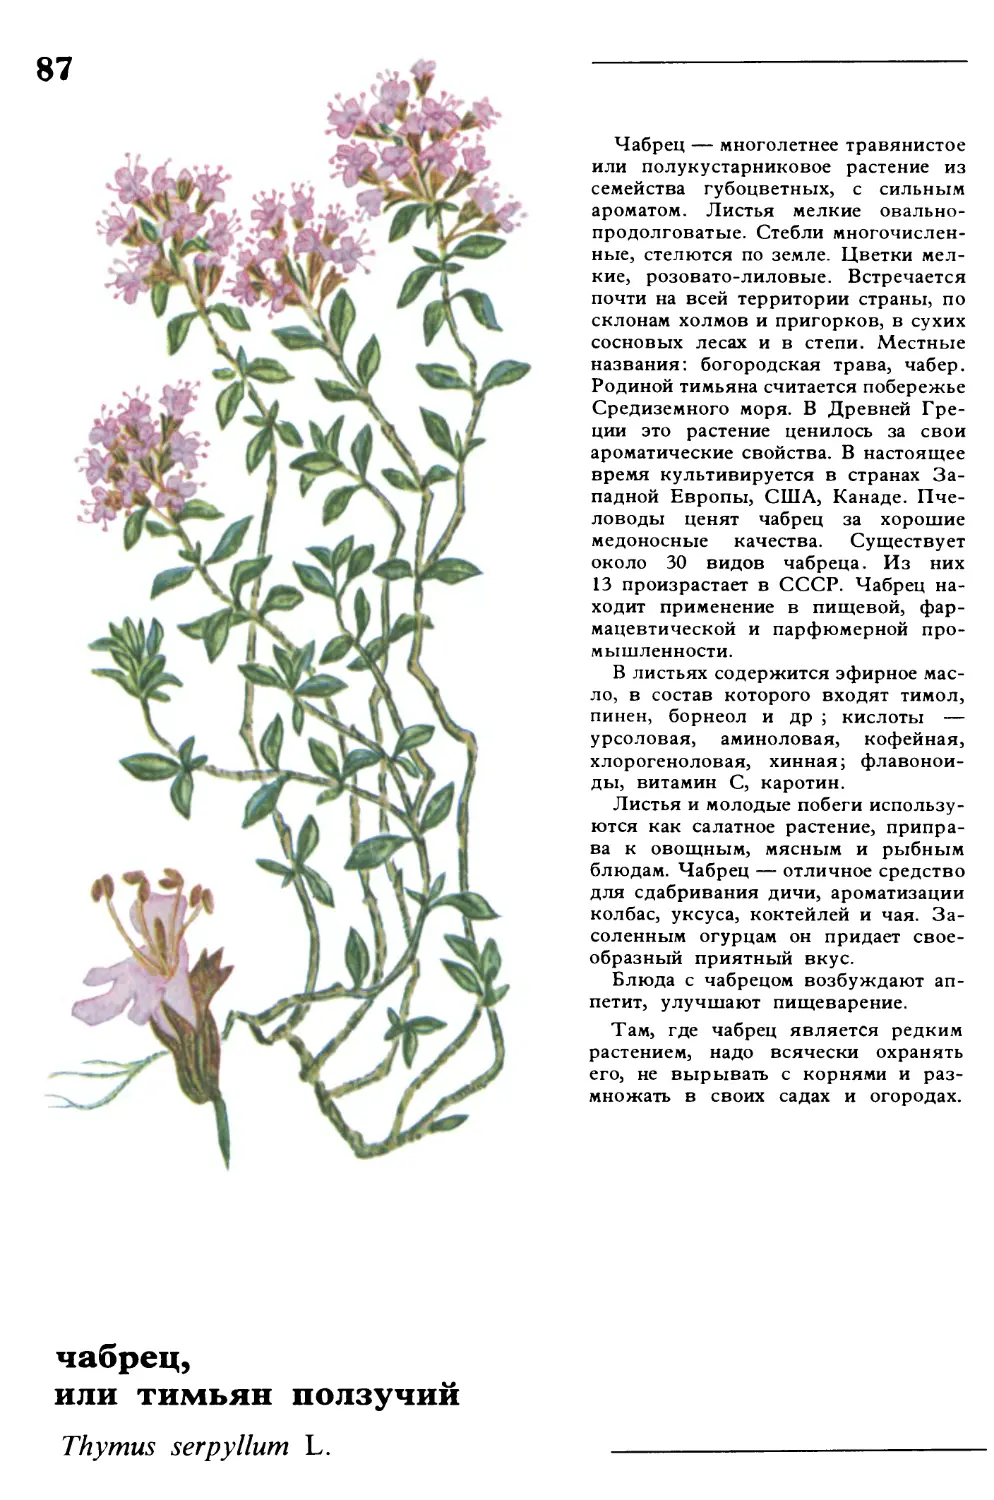 Чабрец
чабрец, или тимьян ползучий
Thymus serpyllum L.